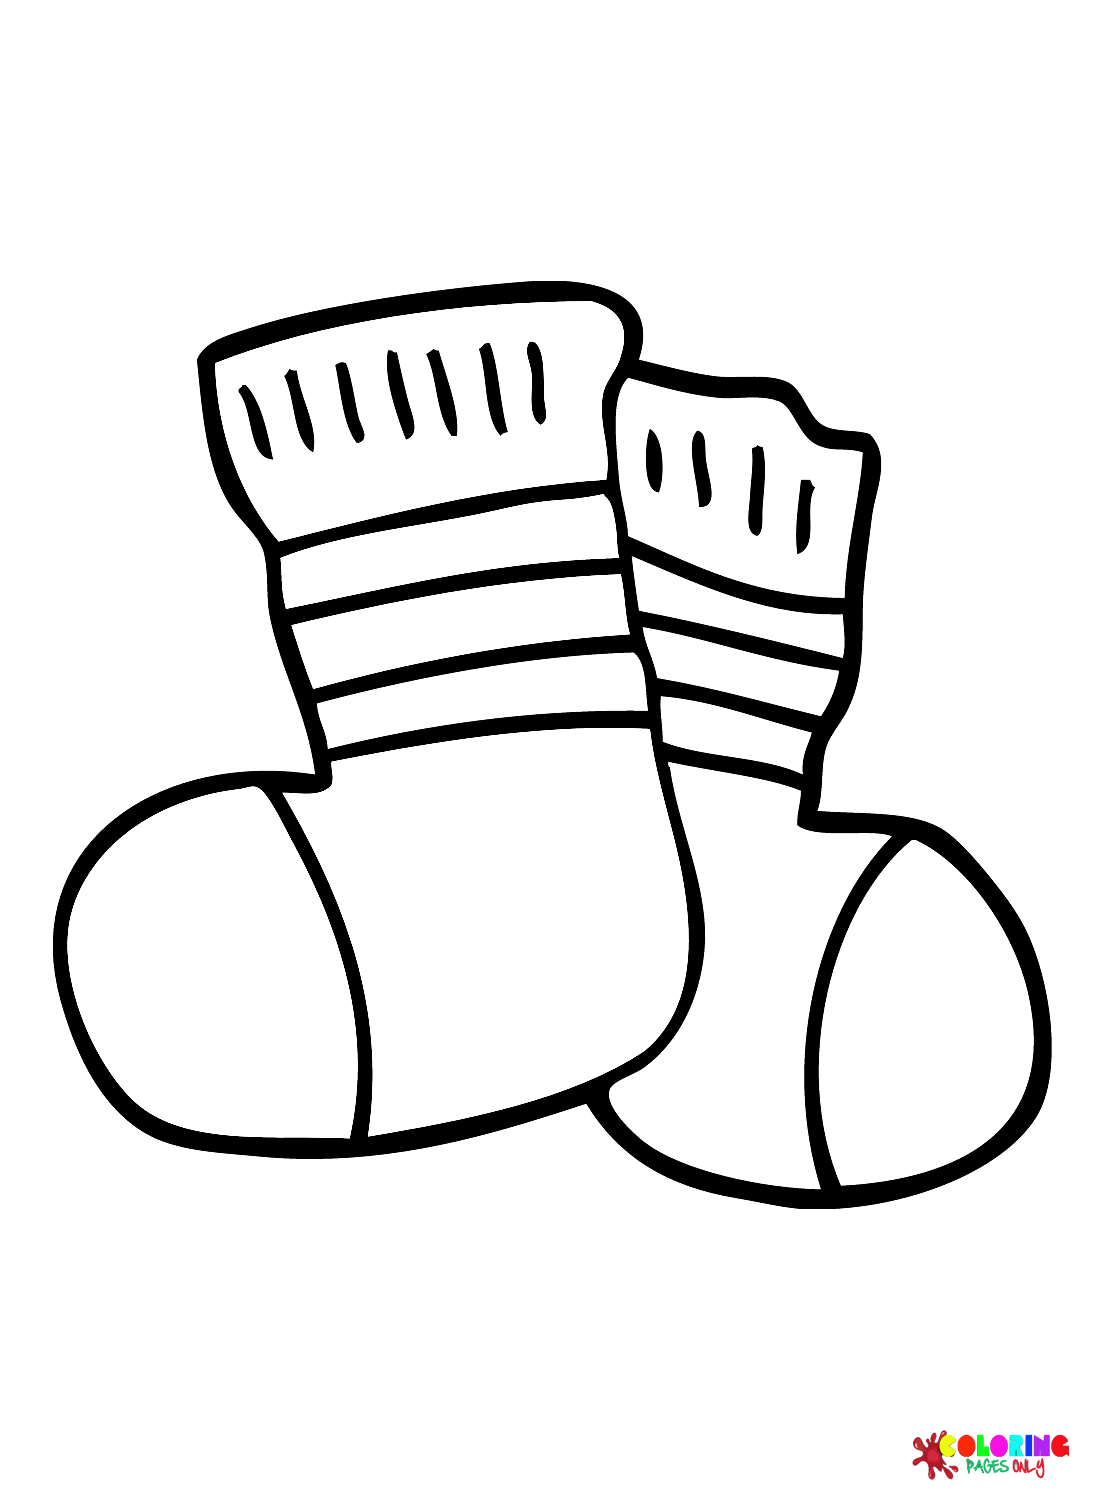 Images Socks from Socks